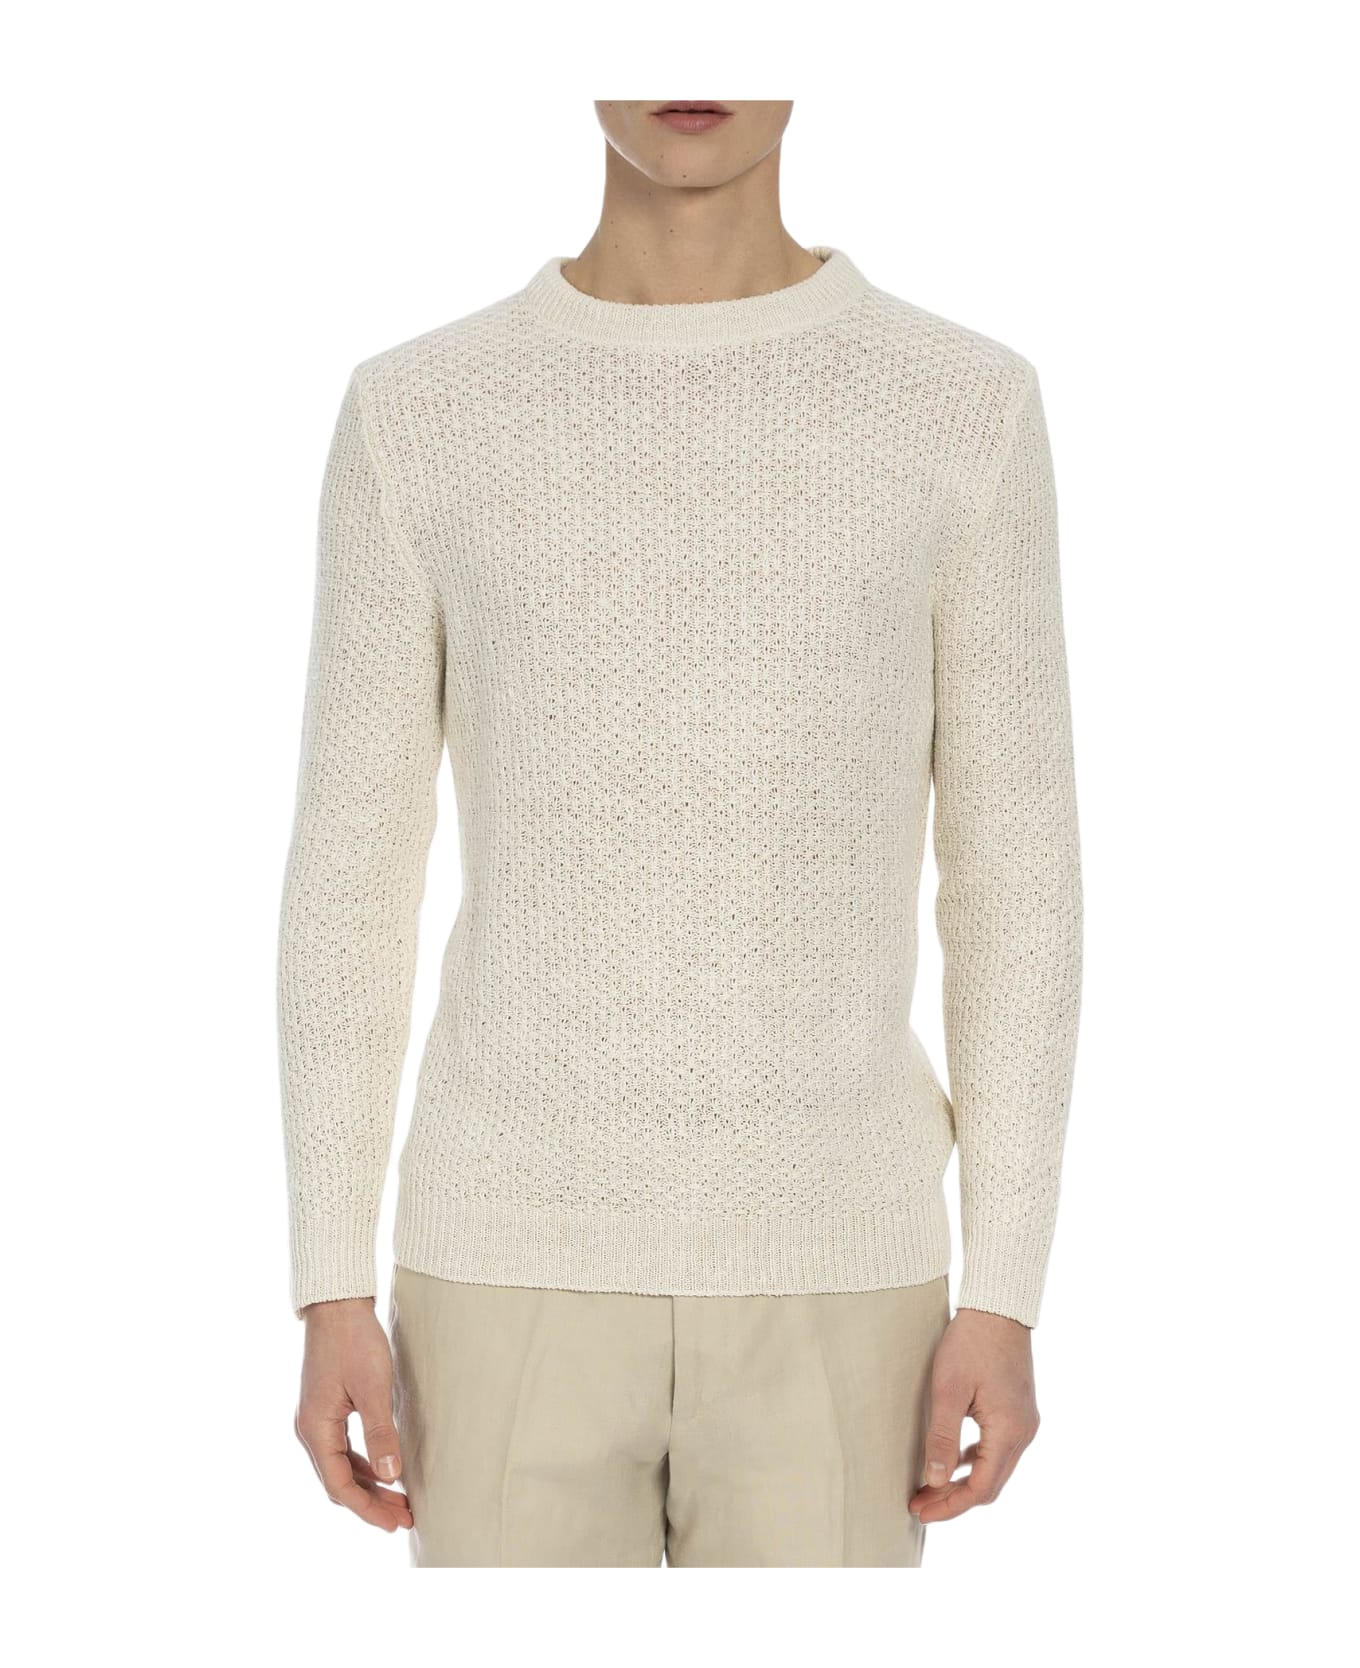 Larusmiani 'meadow Lane' Sweater Sweater - Ivory